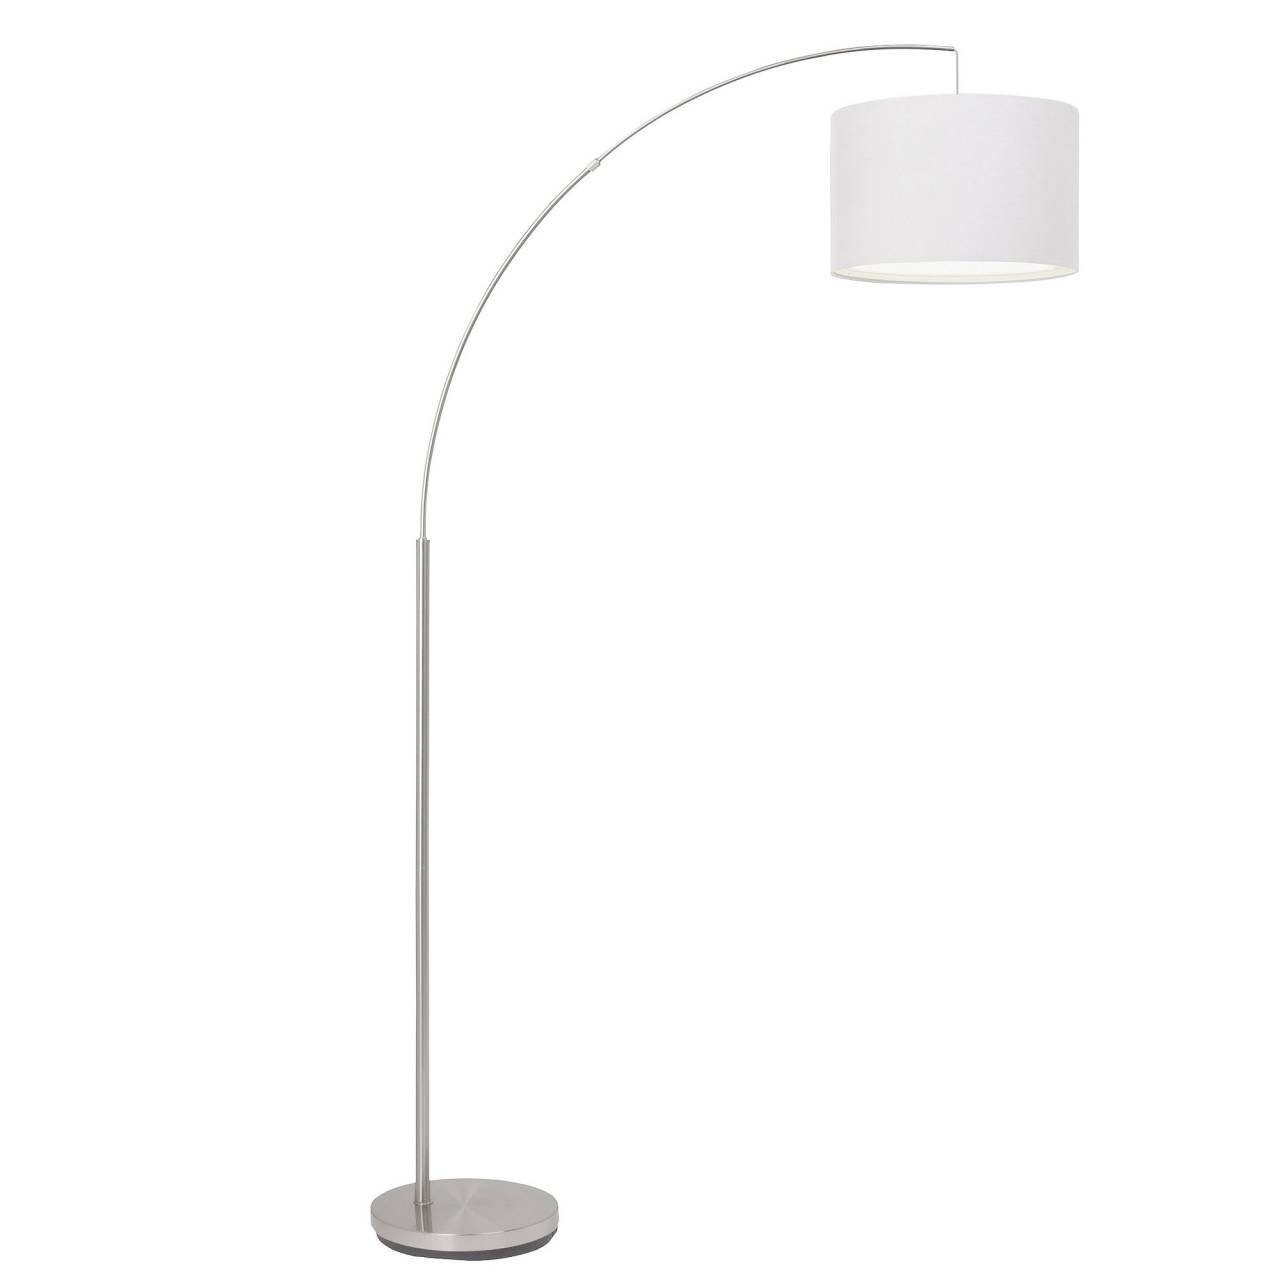 Lampe gee eisen/weiß 60W, Clarie, 1x Bogenstandleuchte E27, A60, Brilliant 1,8m Stehlampe Clarie